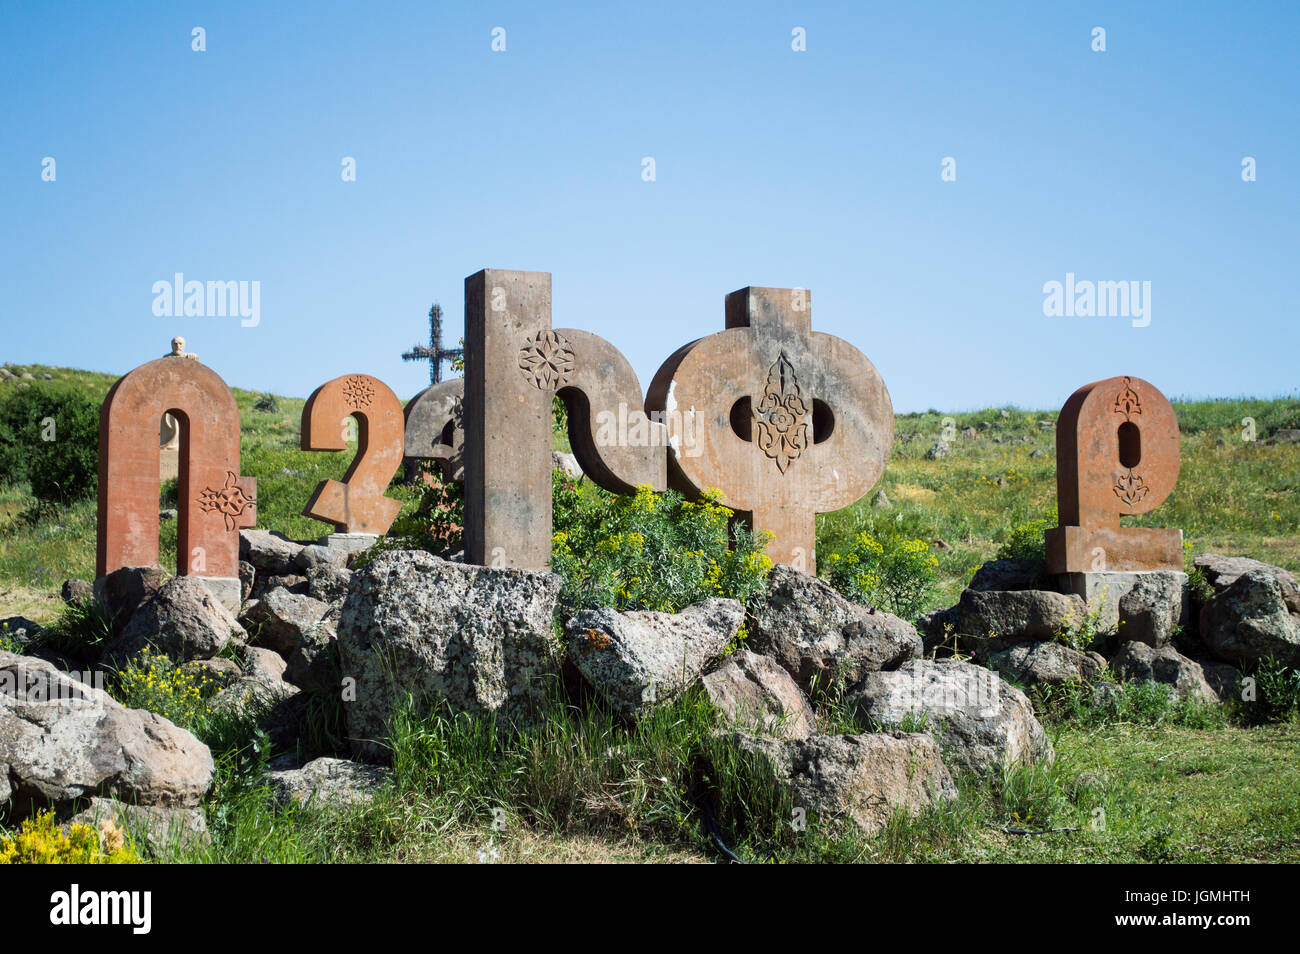 Buchstaben des armenischen Alphabets - armenische Alphabet Denkmal, Armenien - 2. Juli 2017 Stockfoto